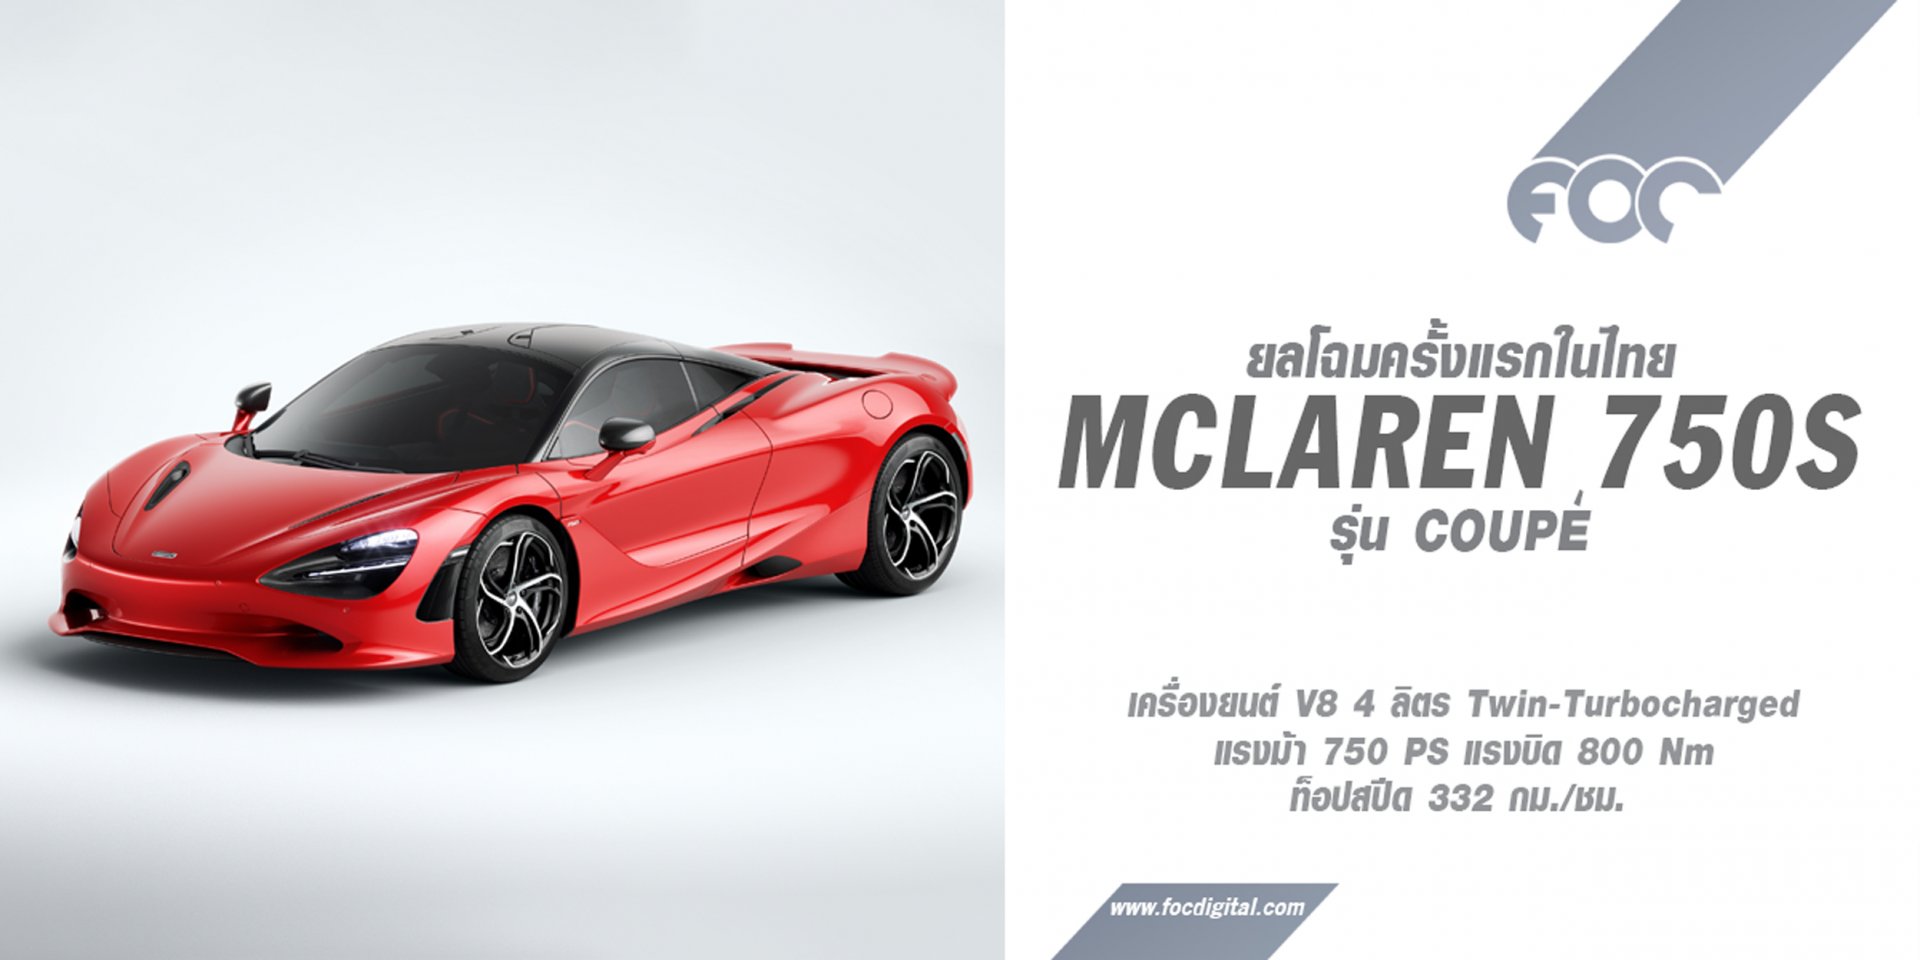 McLaren Bangkok ร่วมฉลองแบรนด์แมคลาเรนครบรอบ 60 ปี เปิดตัวรถรุ่นใหม่ล่าสุด Mclaren 750S รุ่น Coupé